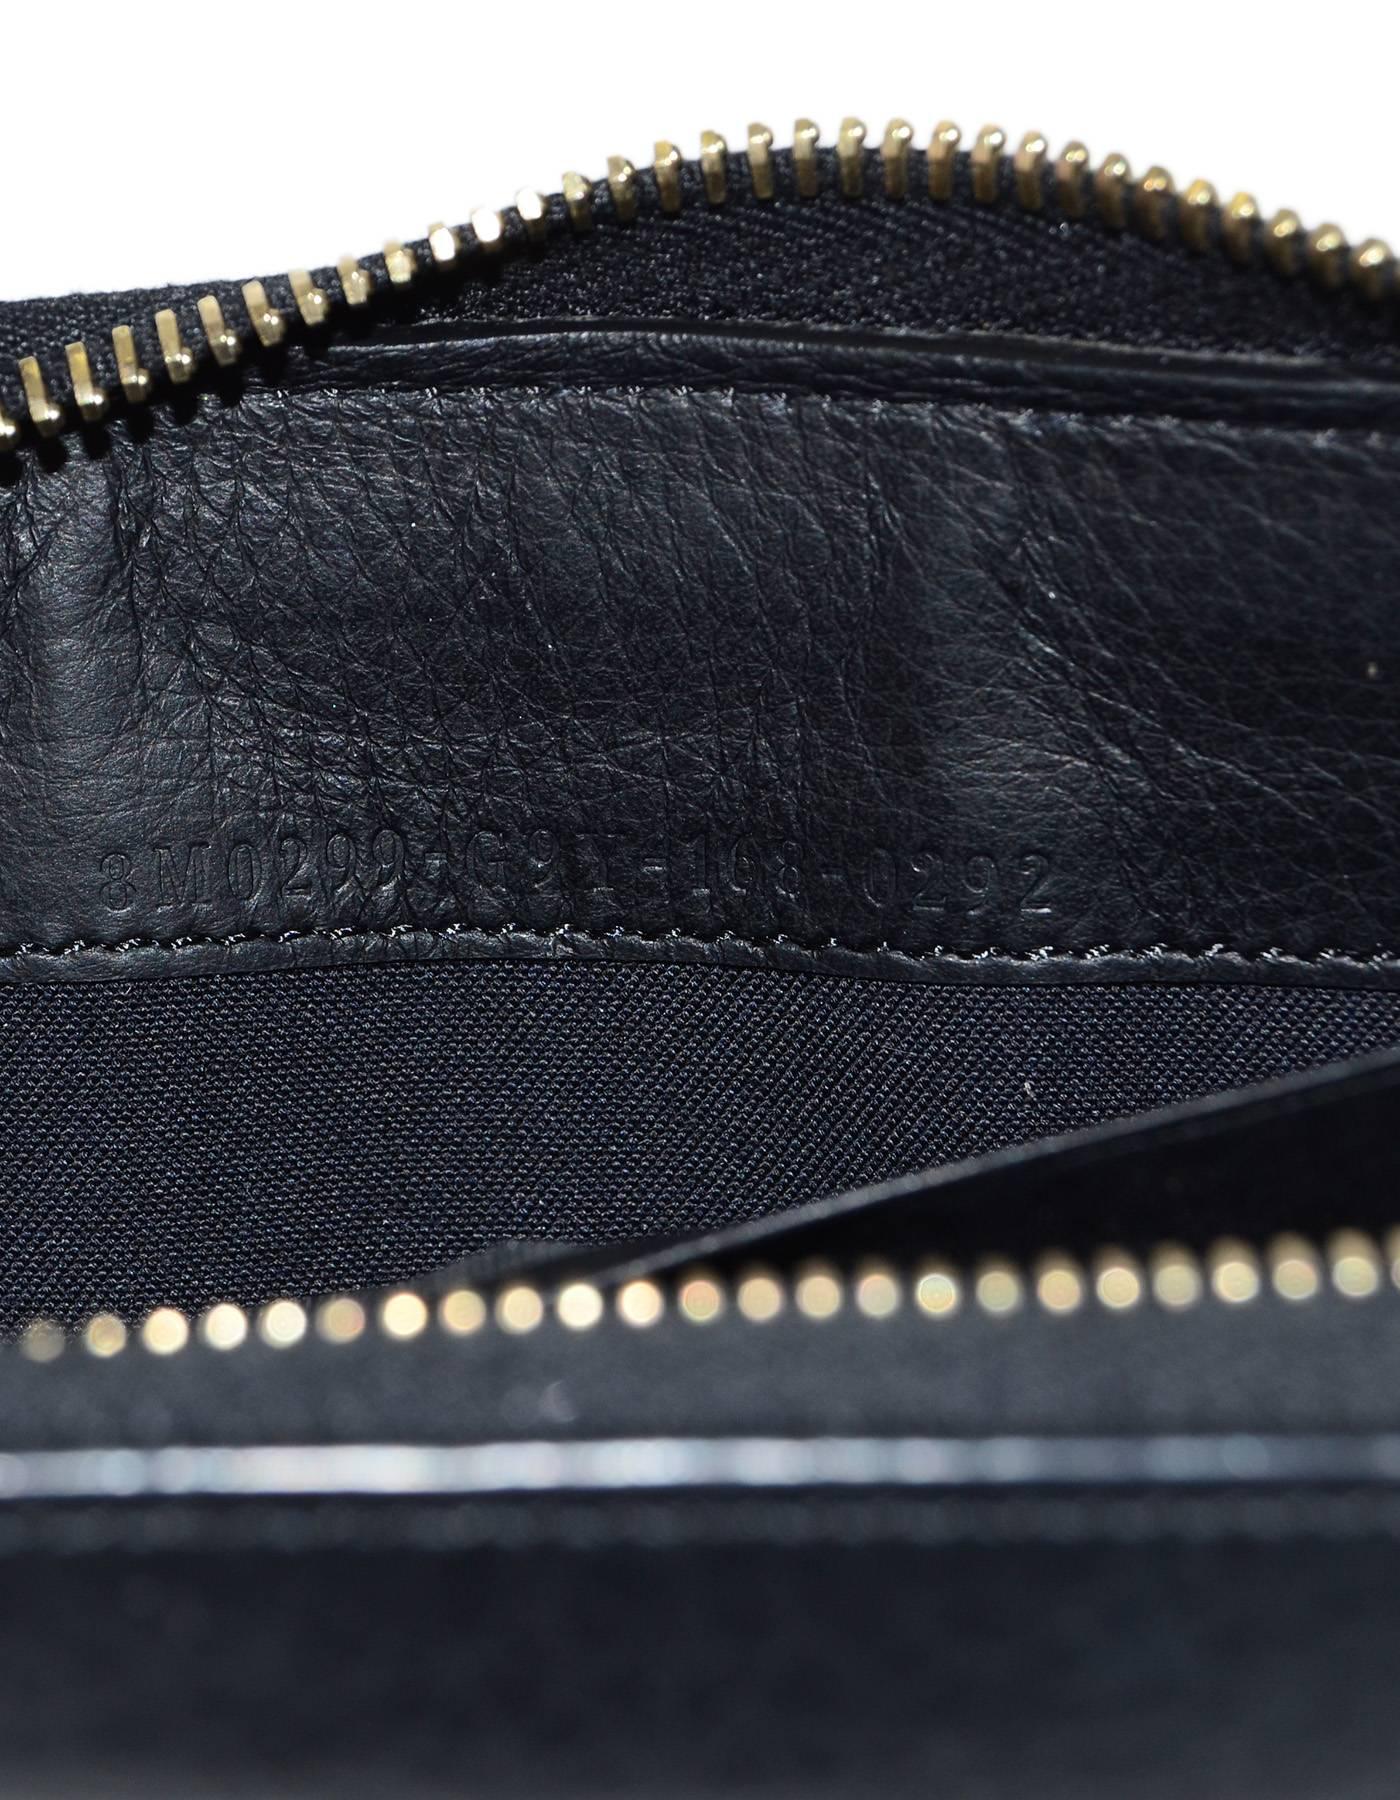 Fendi 2016 Black Leather Logo Zip Around Wallet GHW rt $650 4